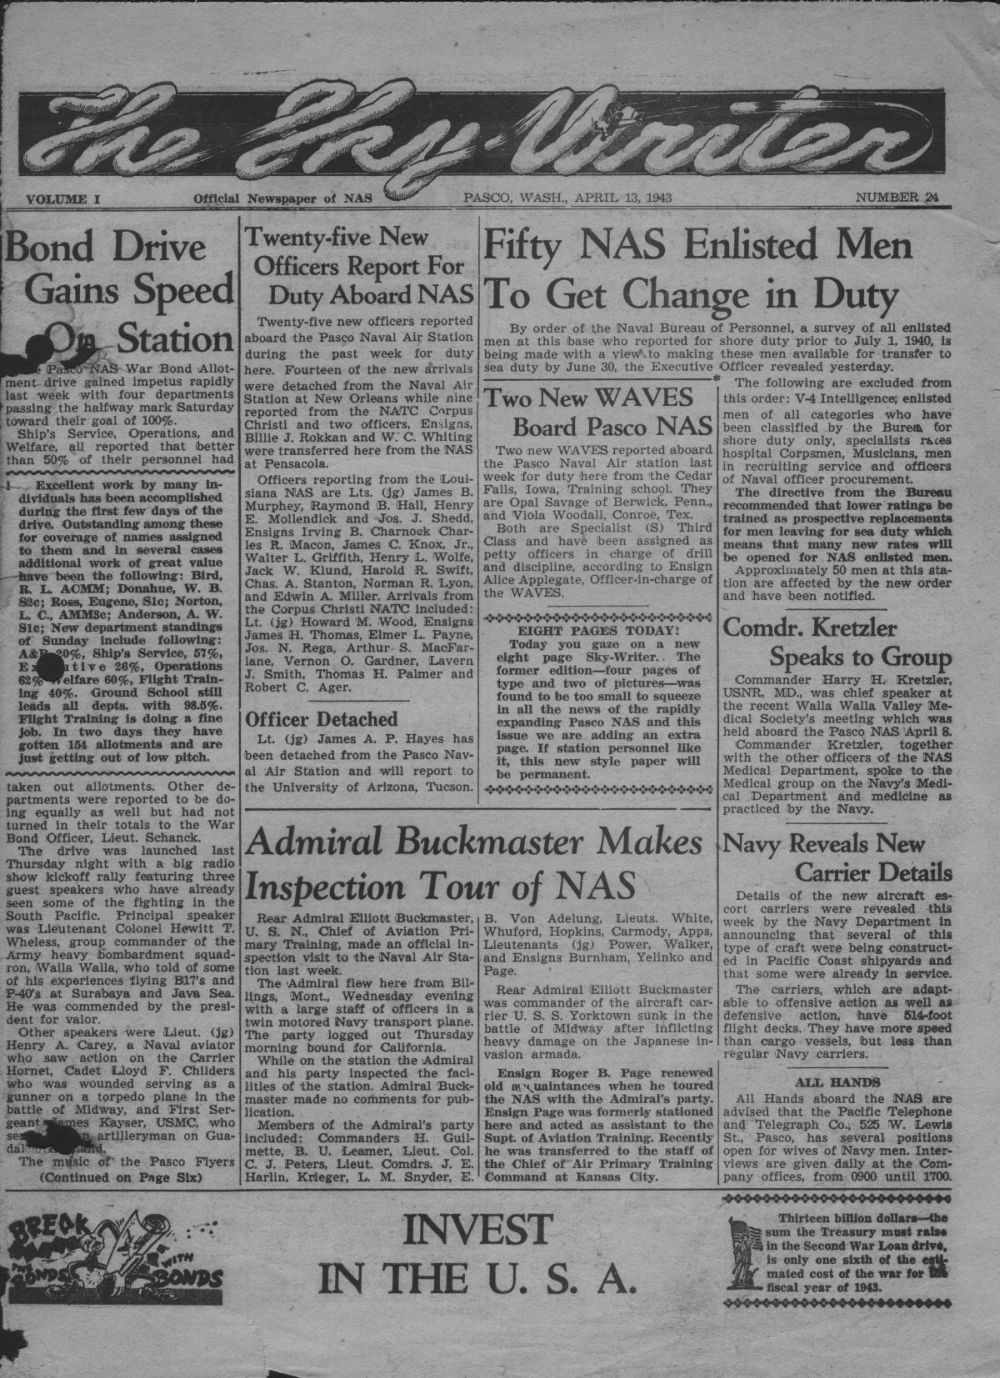 The NAS Pasco Sky-Writer, June 29, 1943, page 1